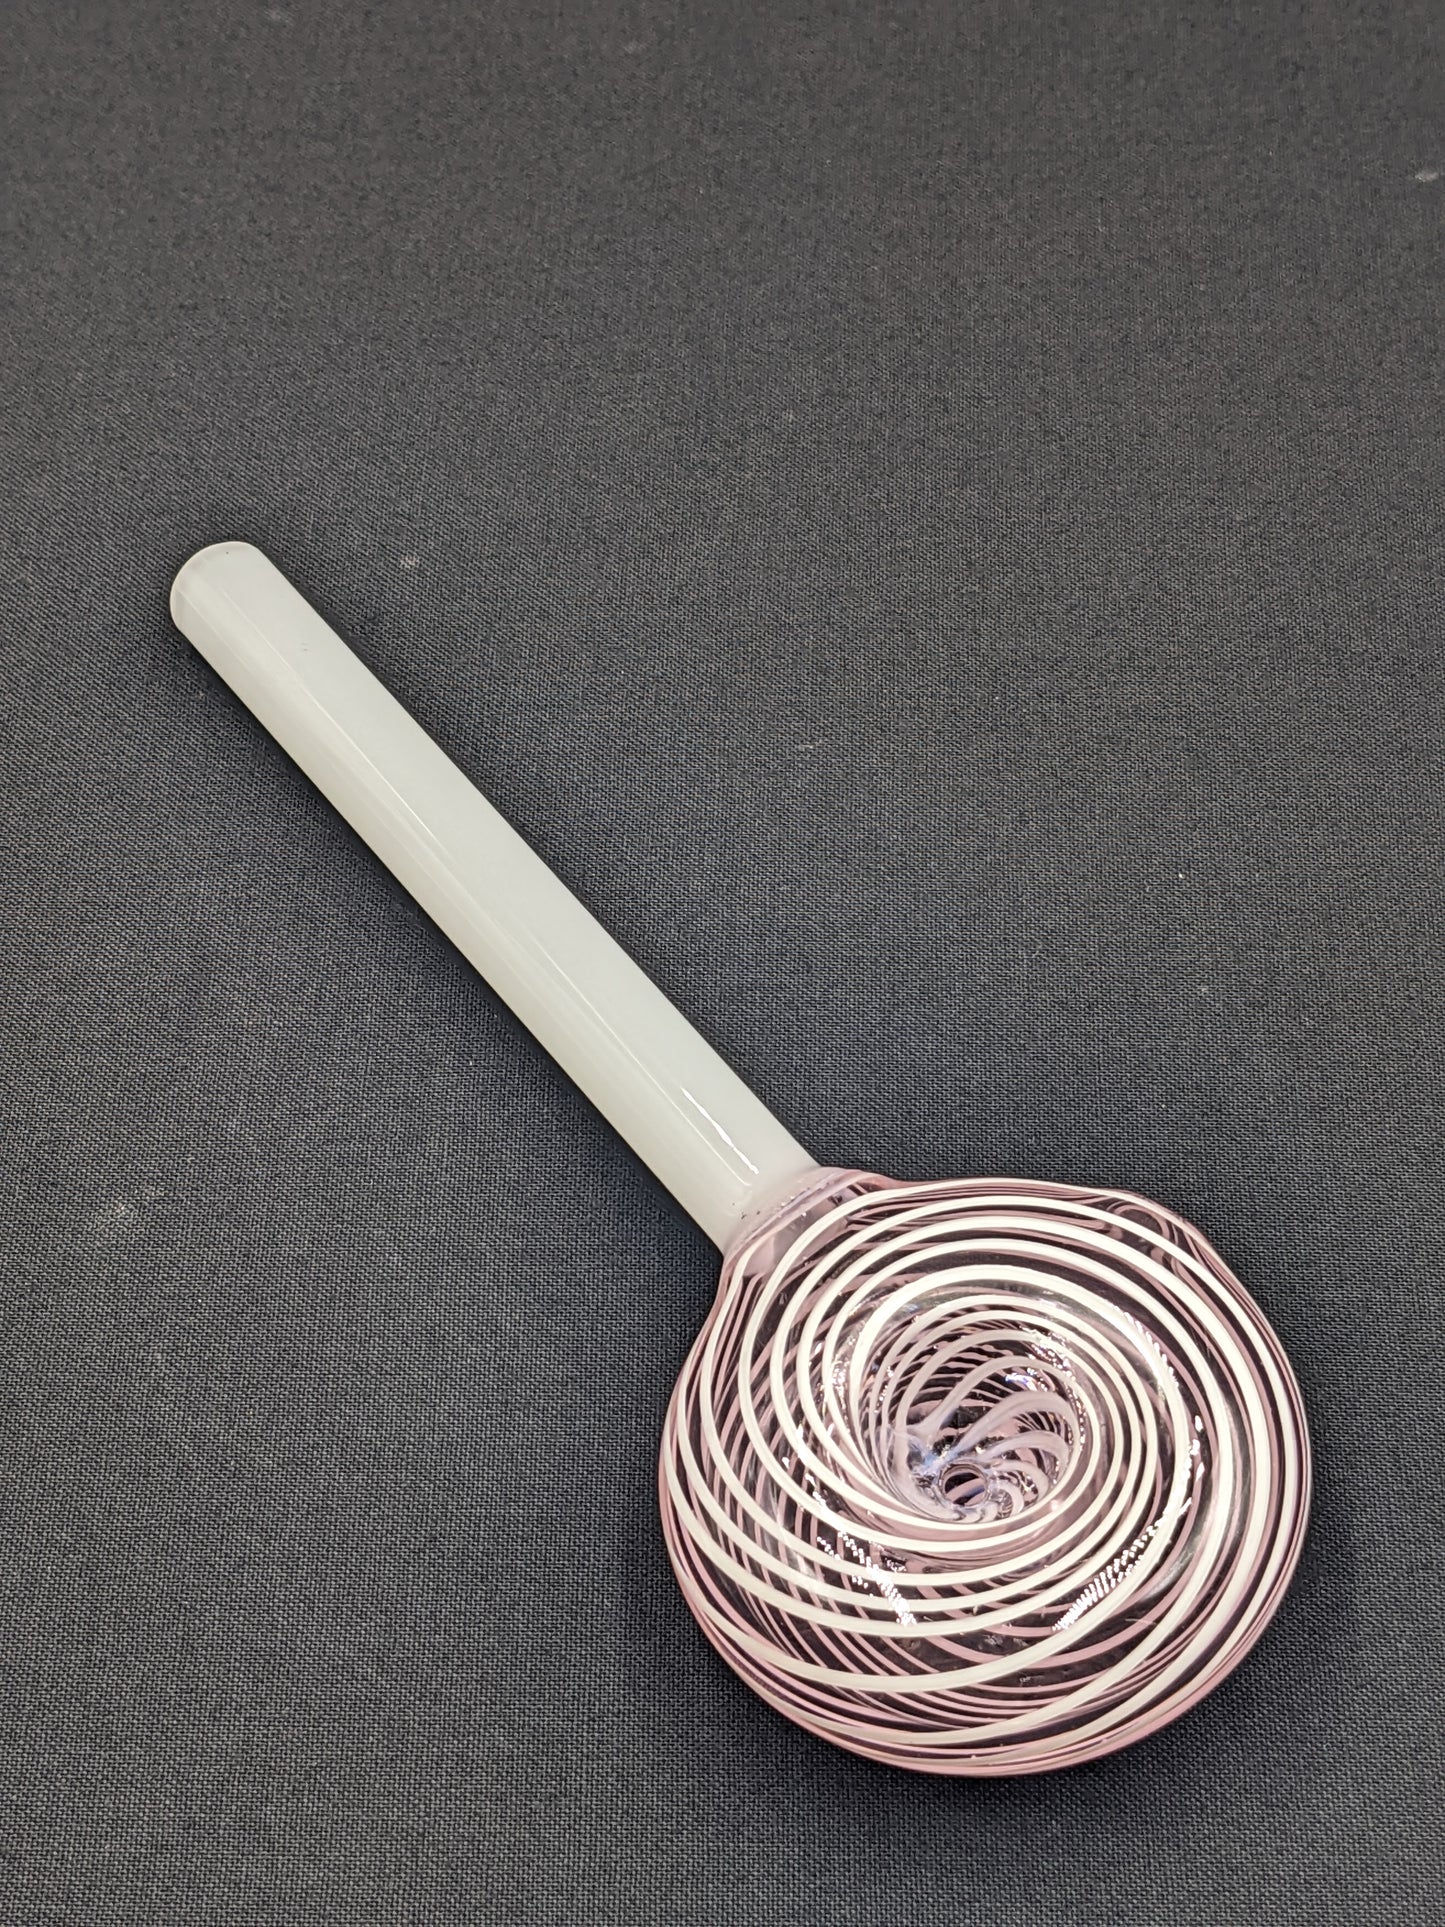 6" Glass Spoon Lollipop Swirl Pink